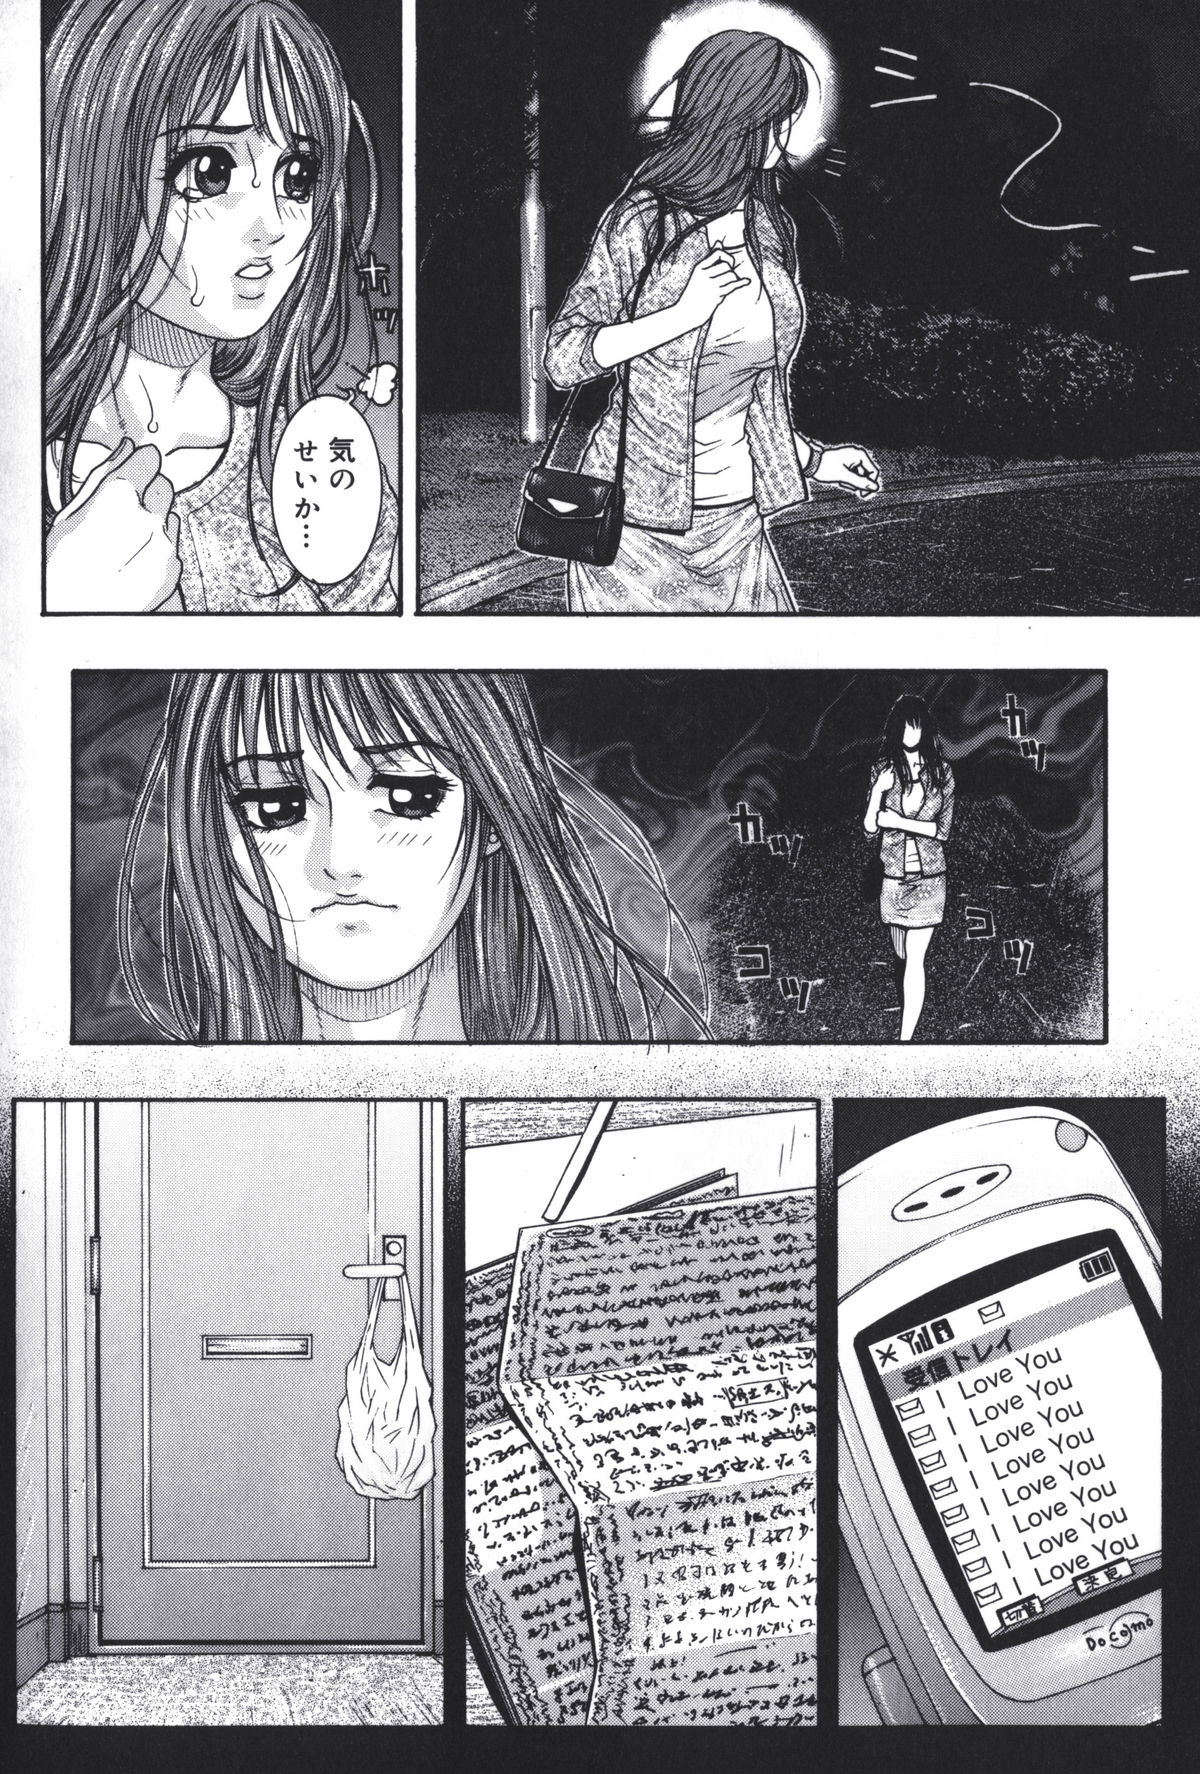 [Kotobuki Kazuki] Predator page 2 full